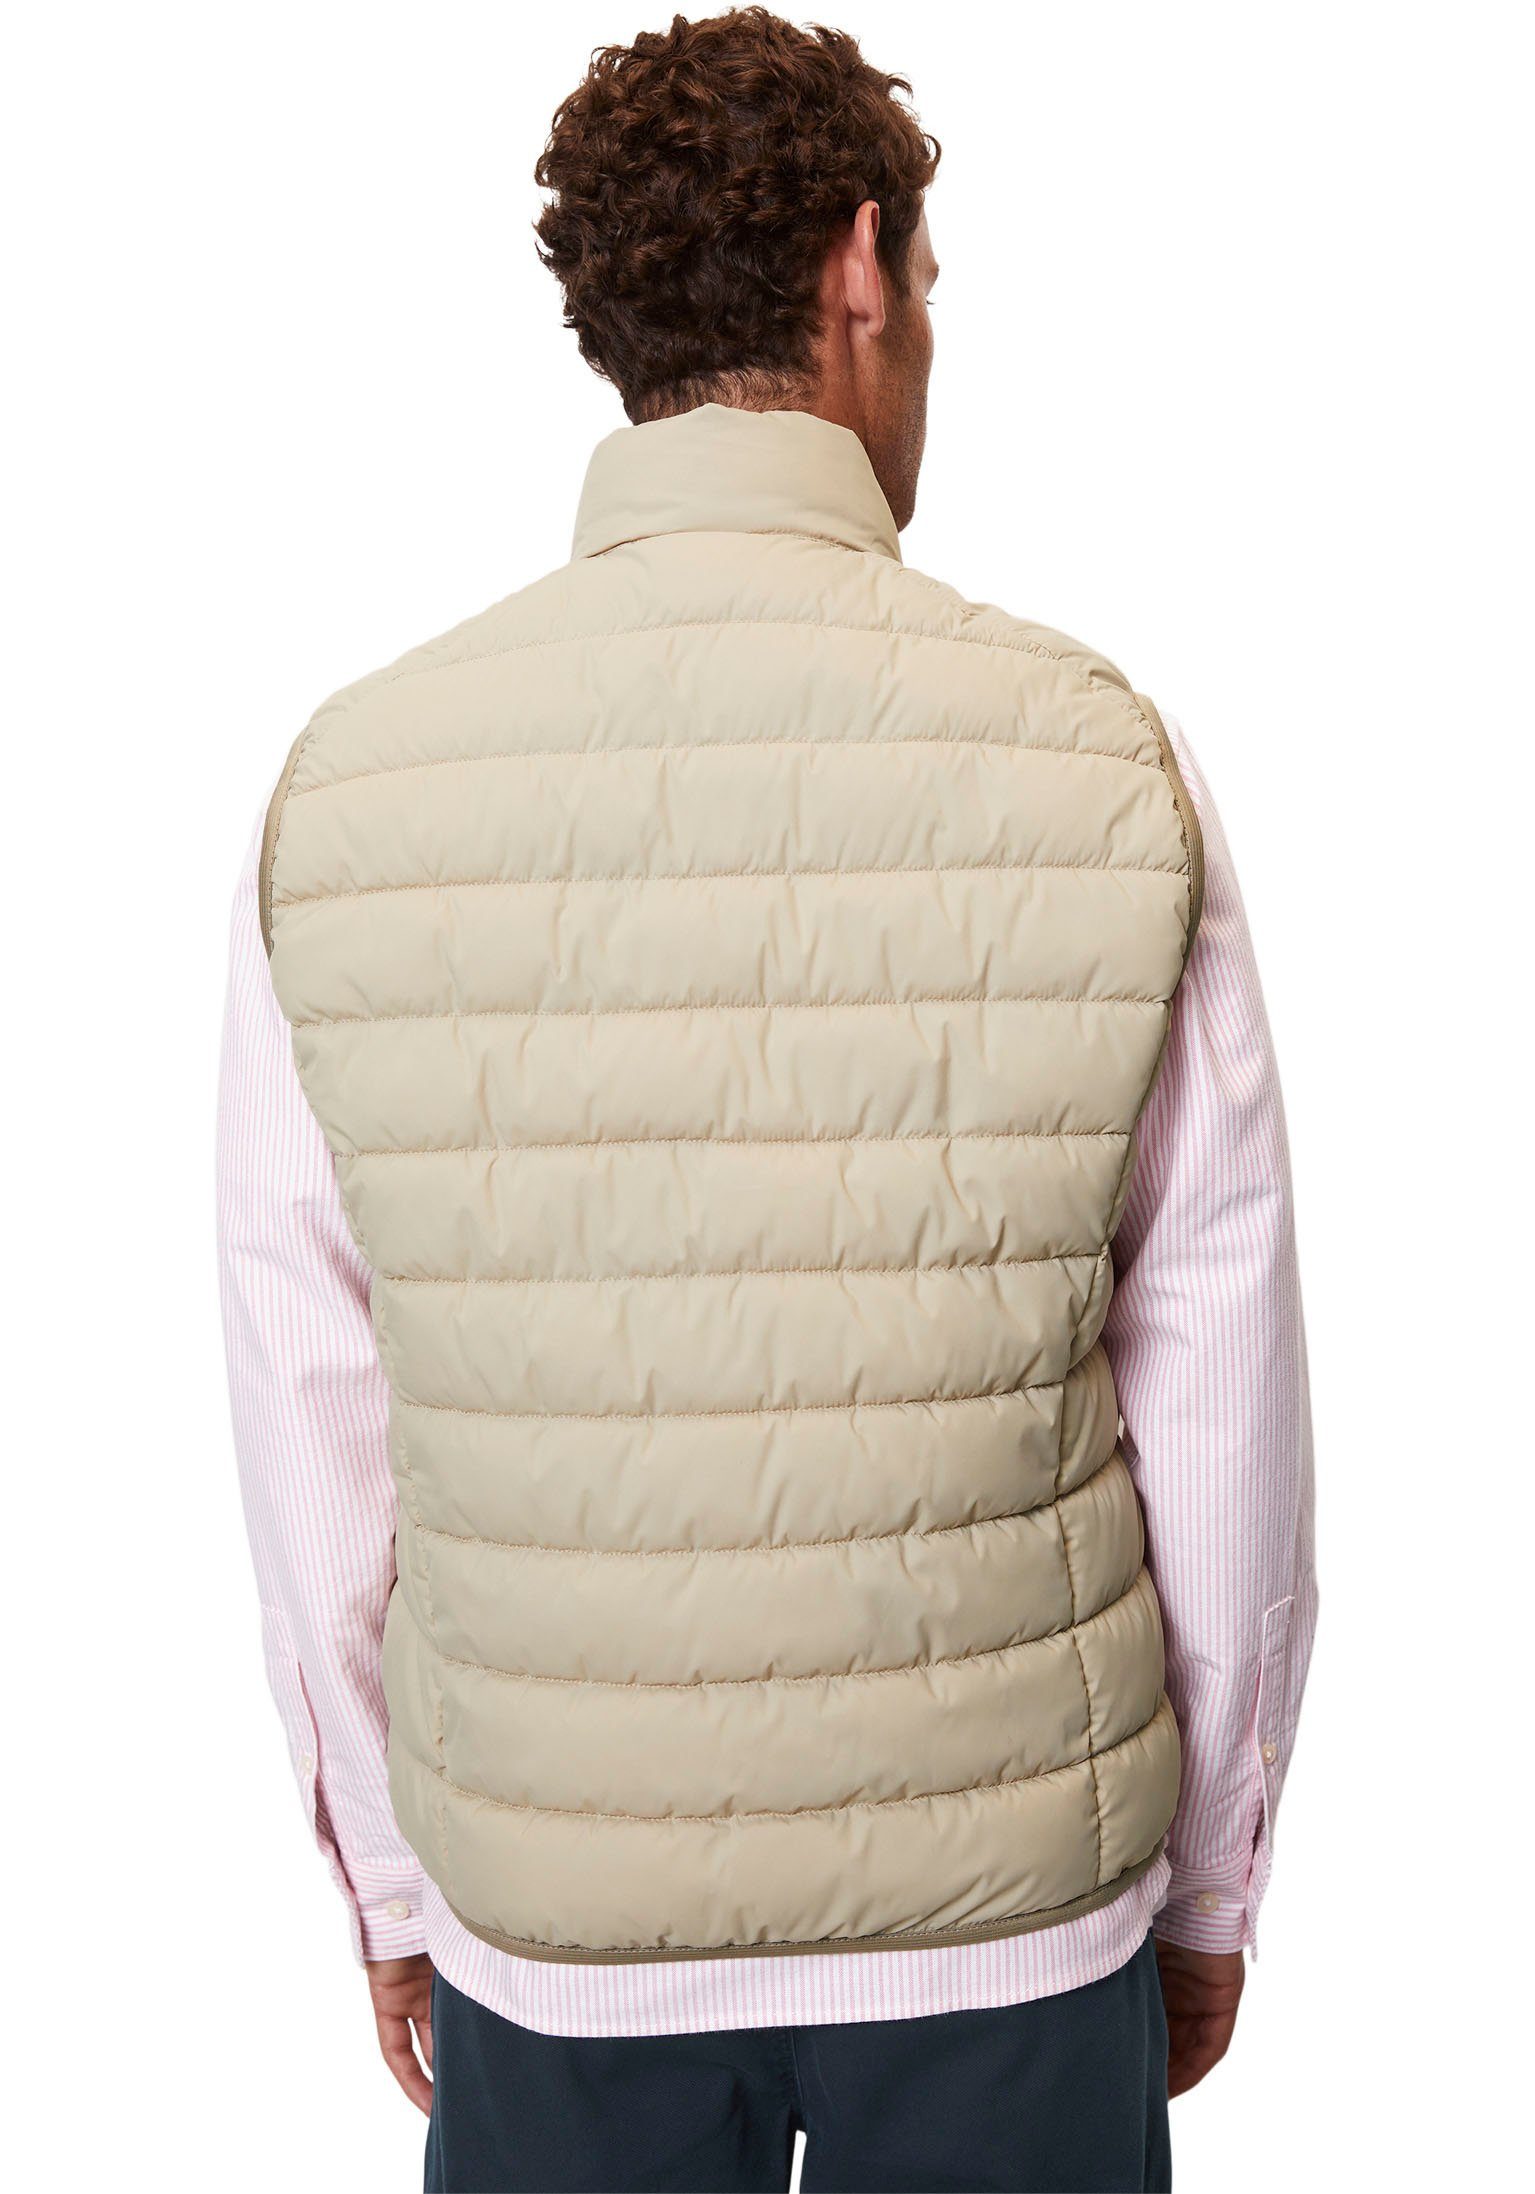 Marc O'Polo stand-up Vest, collar wasserabweisender Steppweste cream sdnd, jonesboro Oberfläche mit